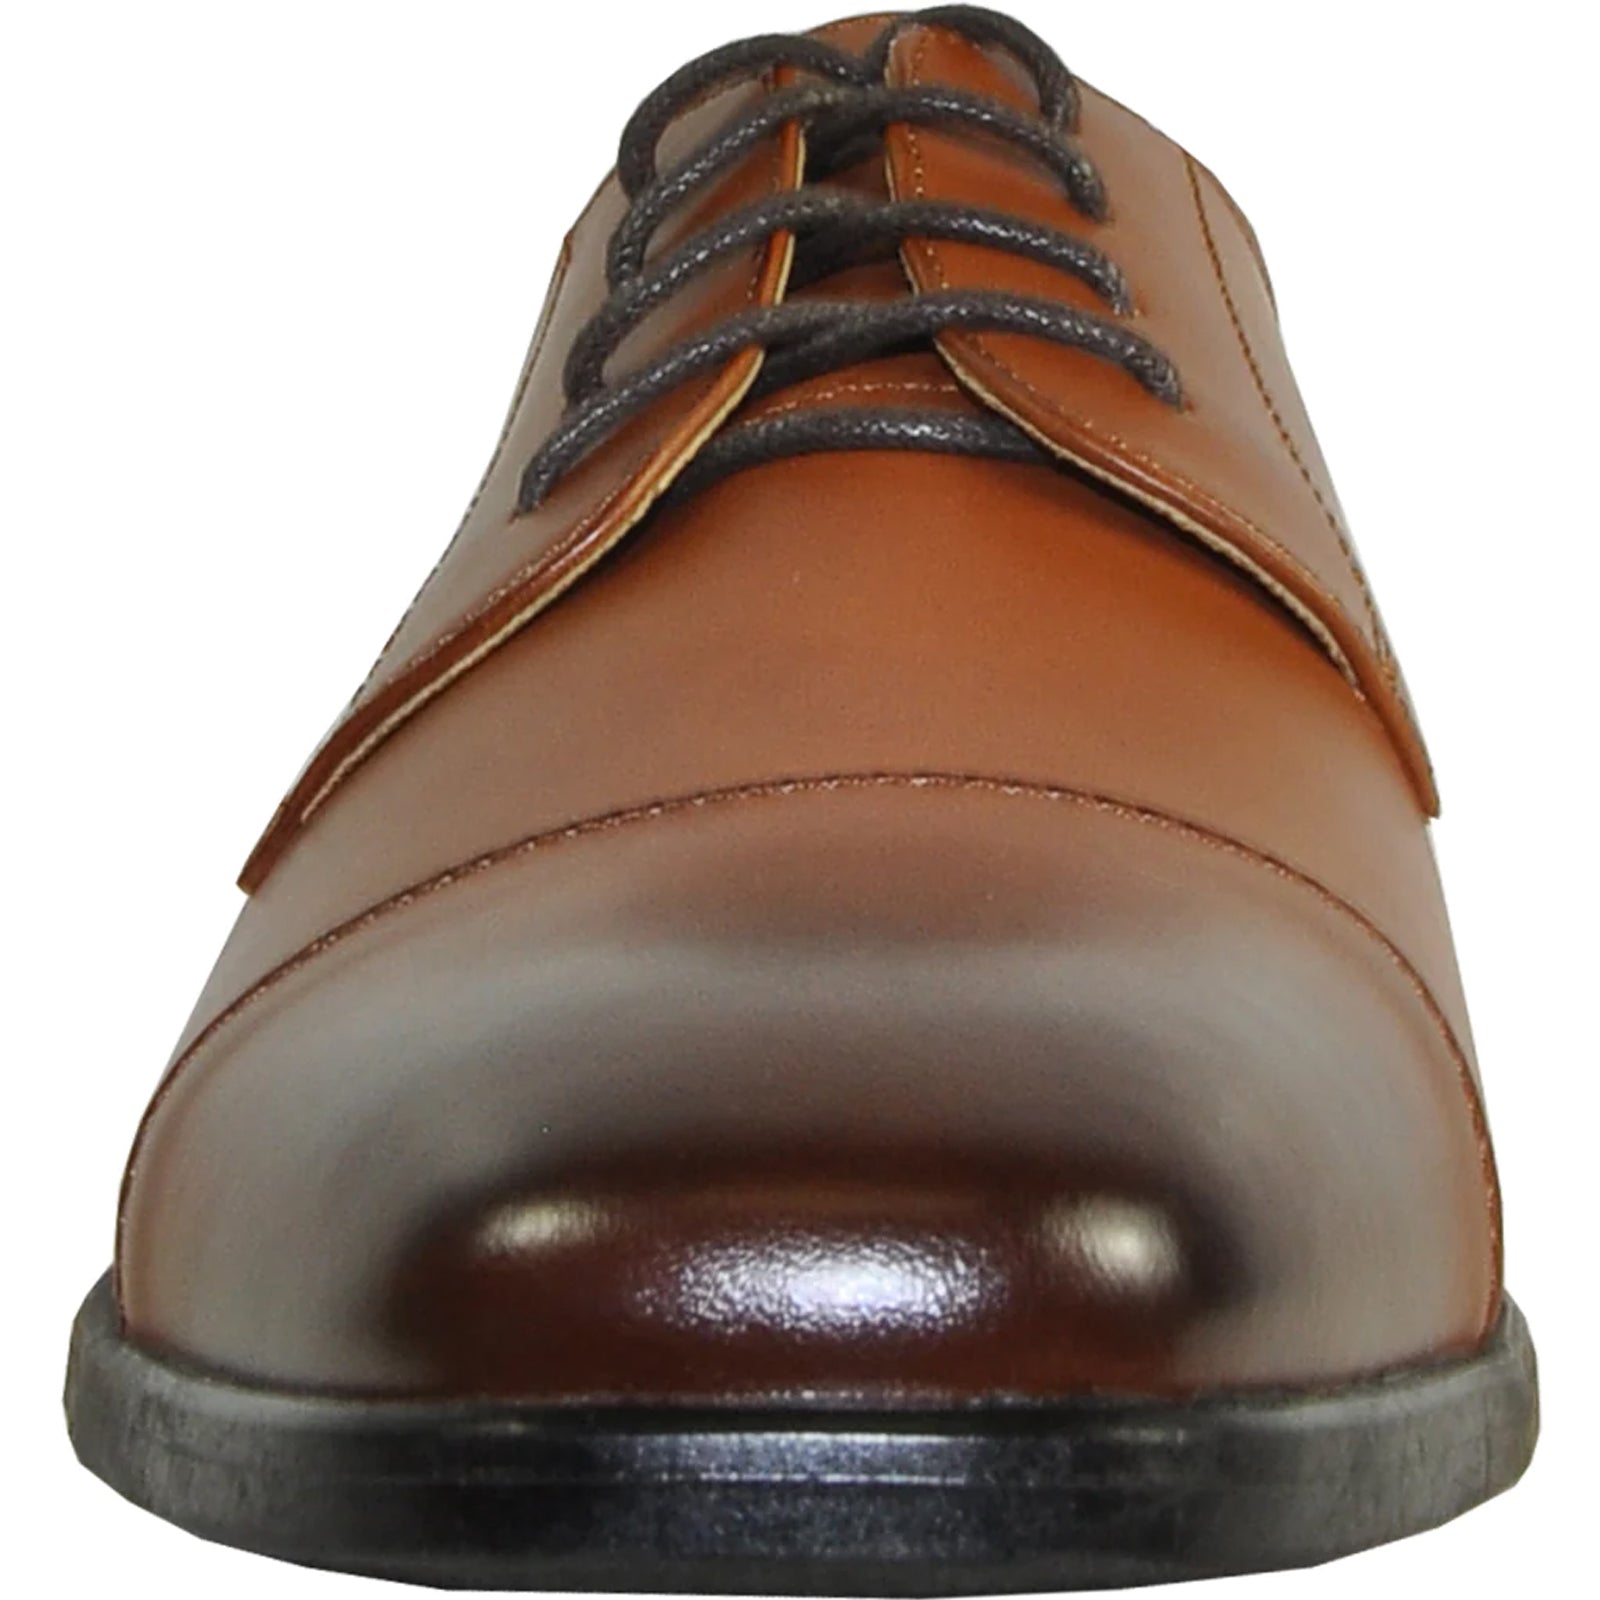 "Antique Brown Vintage Oxford Cap Toe Men's Dress Shoe"